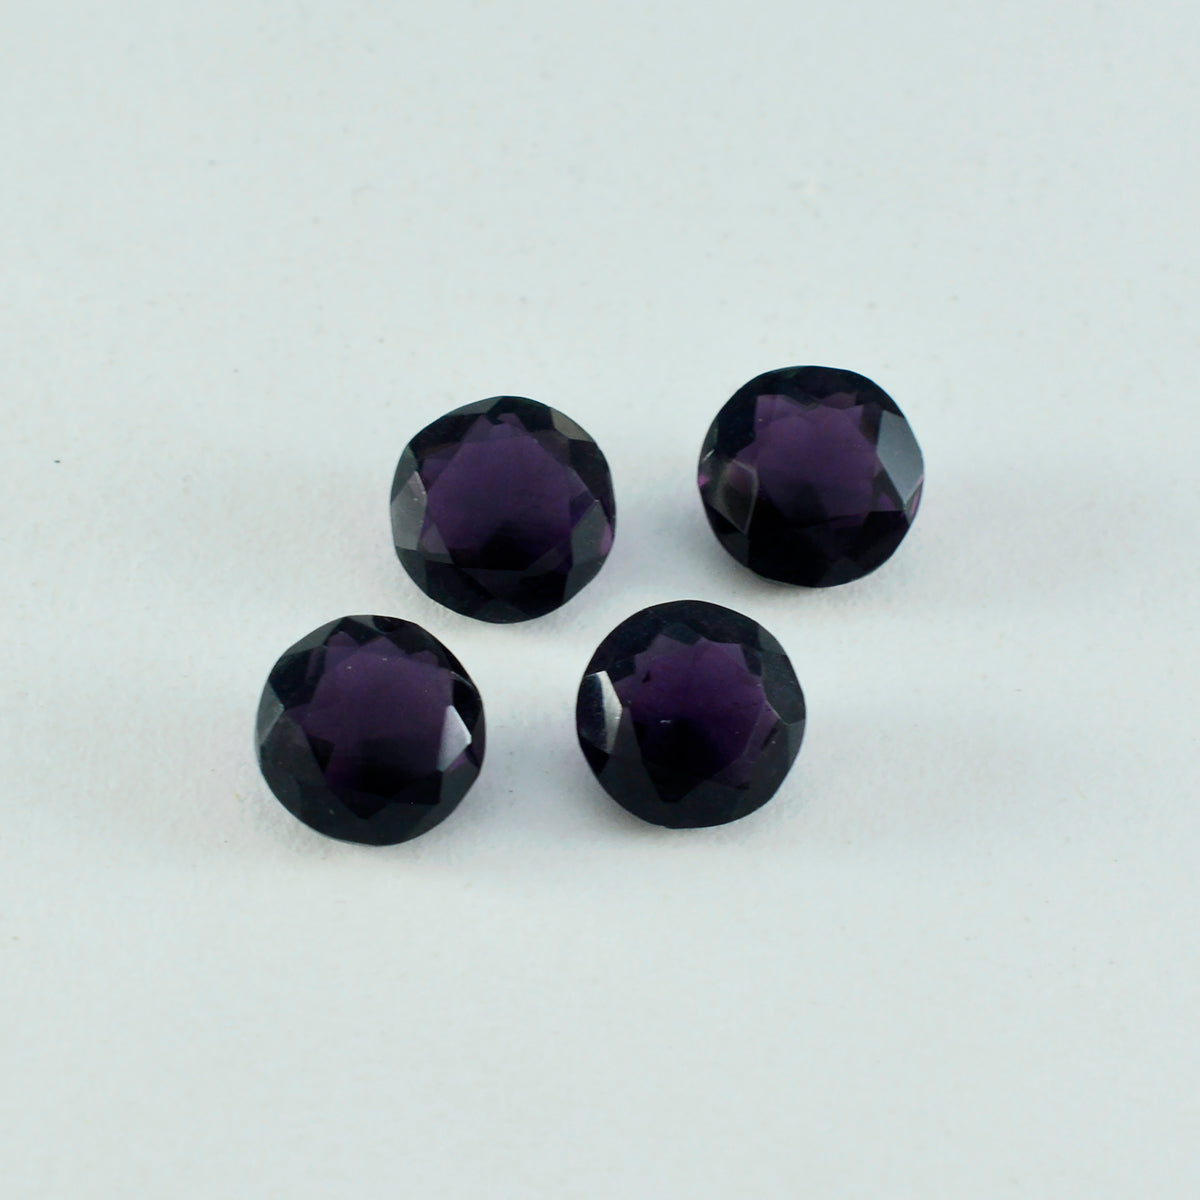 riyogems 1шт фиолетовый аметист cz ограненный 10х10 мм круглая форма драгоценный камень отличного качества